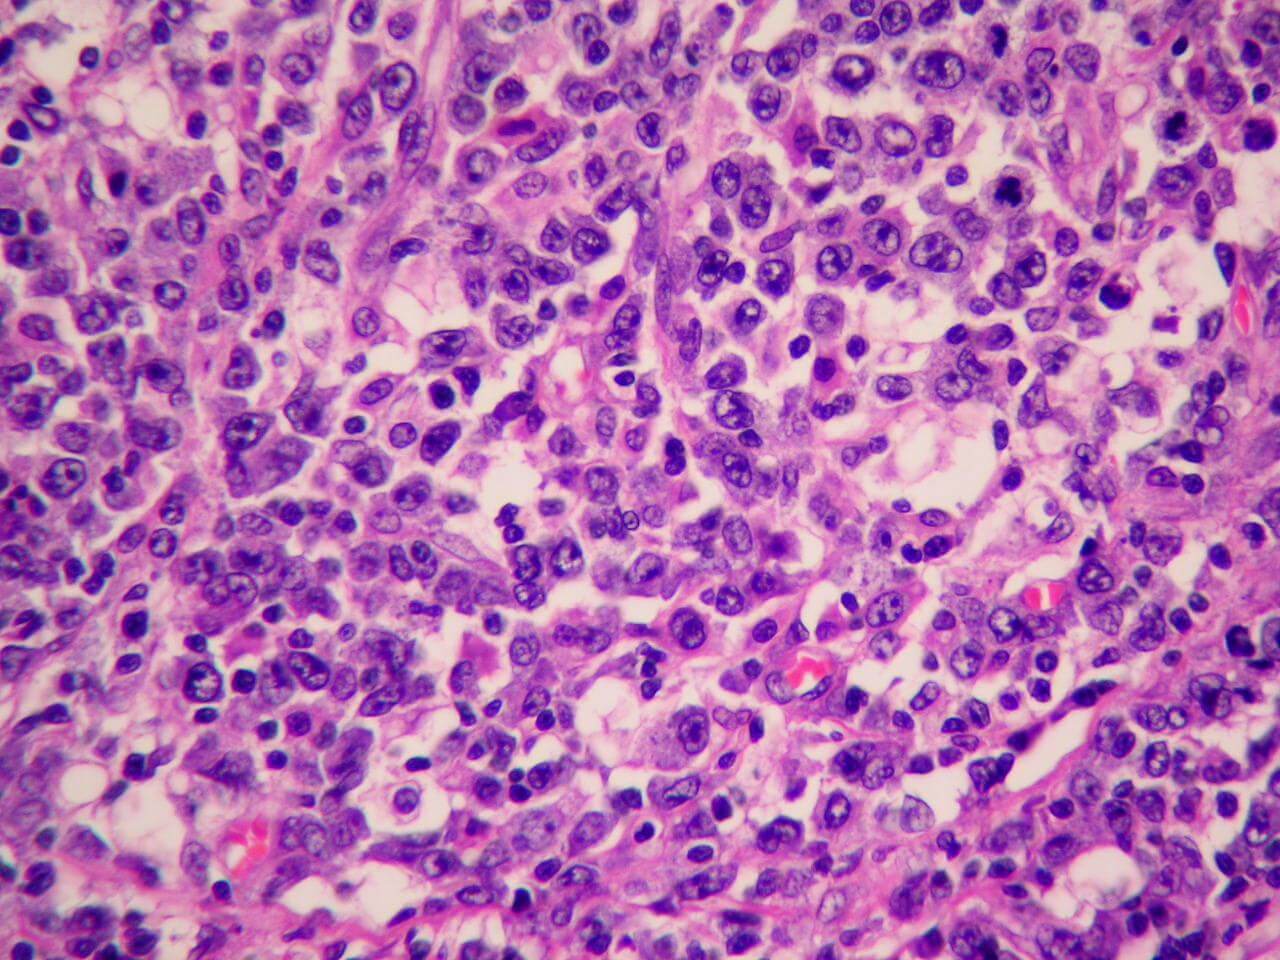 Linfoma anaplásico de células grandes